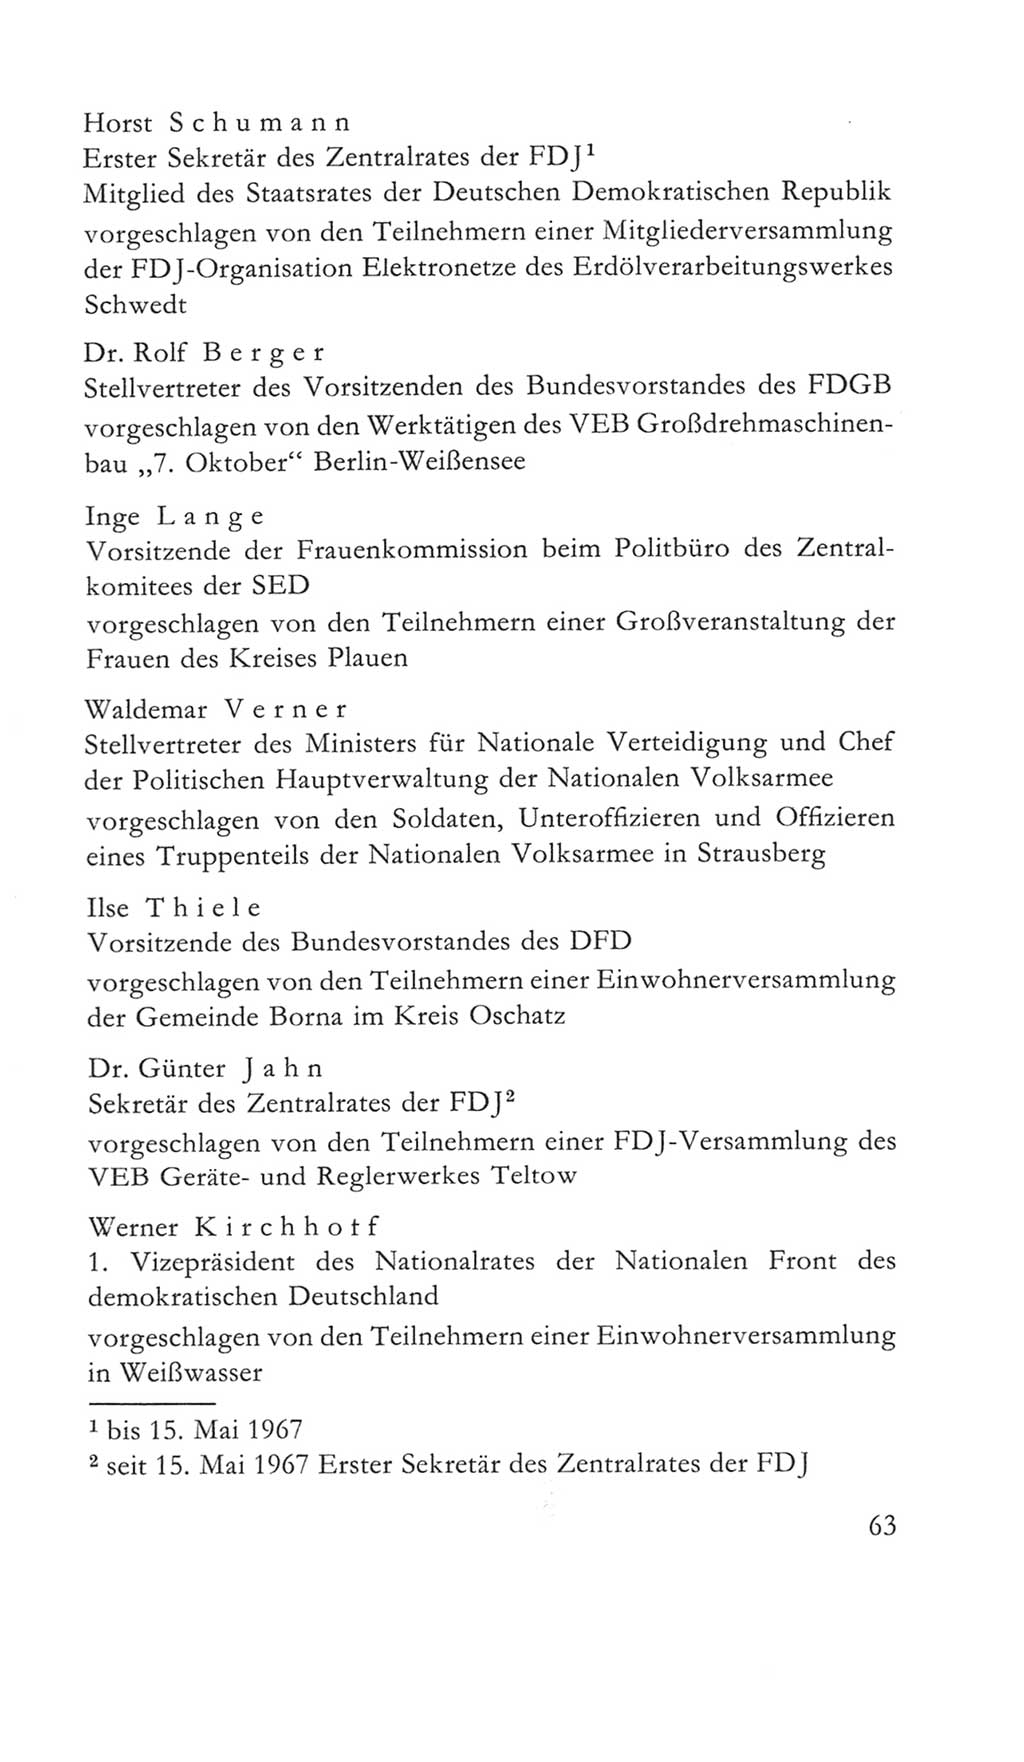 Volkskammer (VK) der Deutschen Demokratischen Republik (DDR) 5. Wahlperiode 1967-1971, Seite 63 (VK. DDR 5. WP. 1967-1971, S. 63)